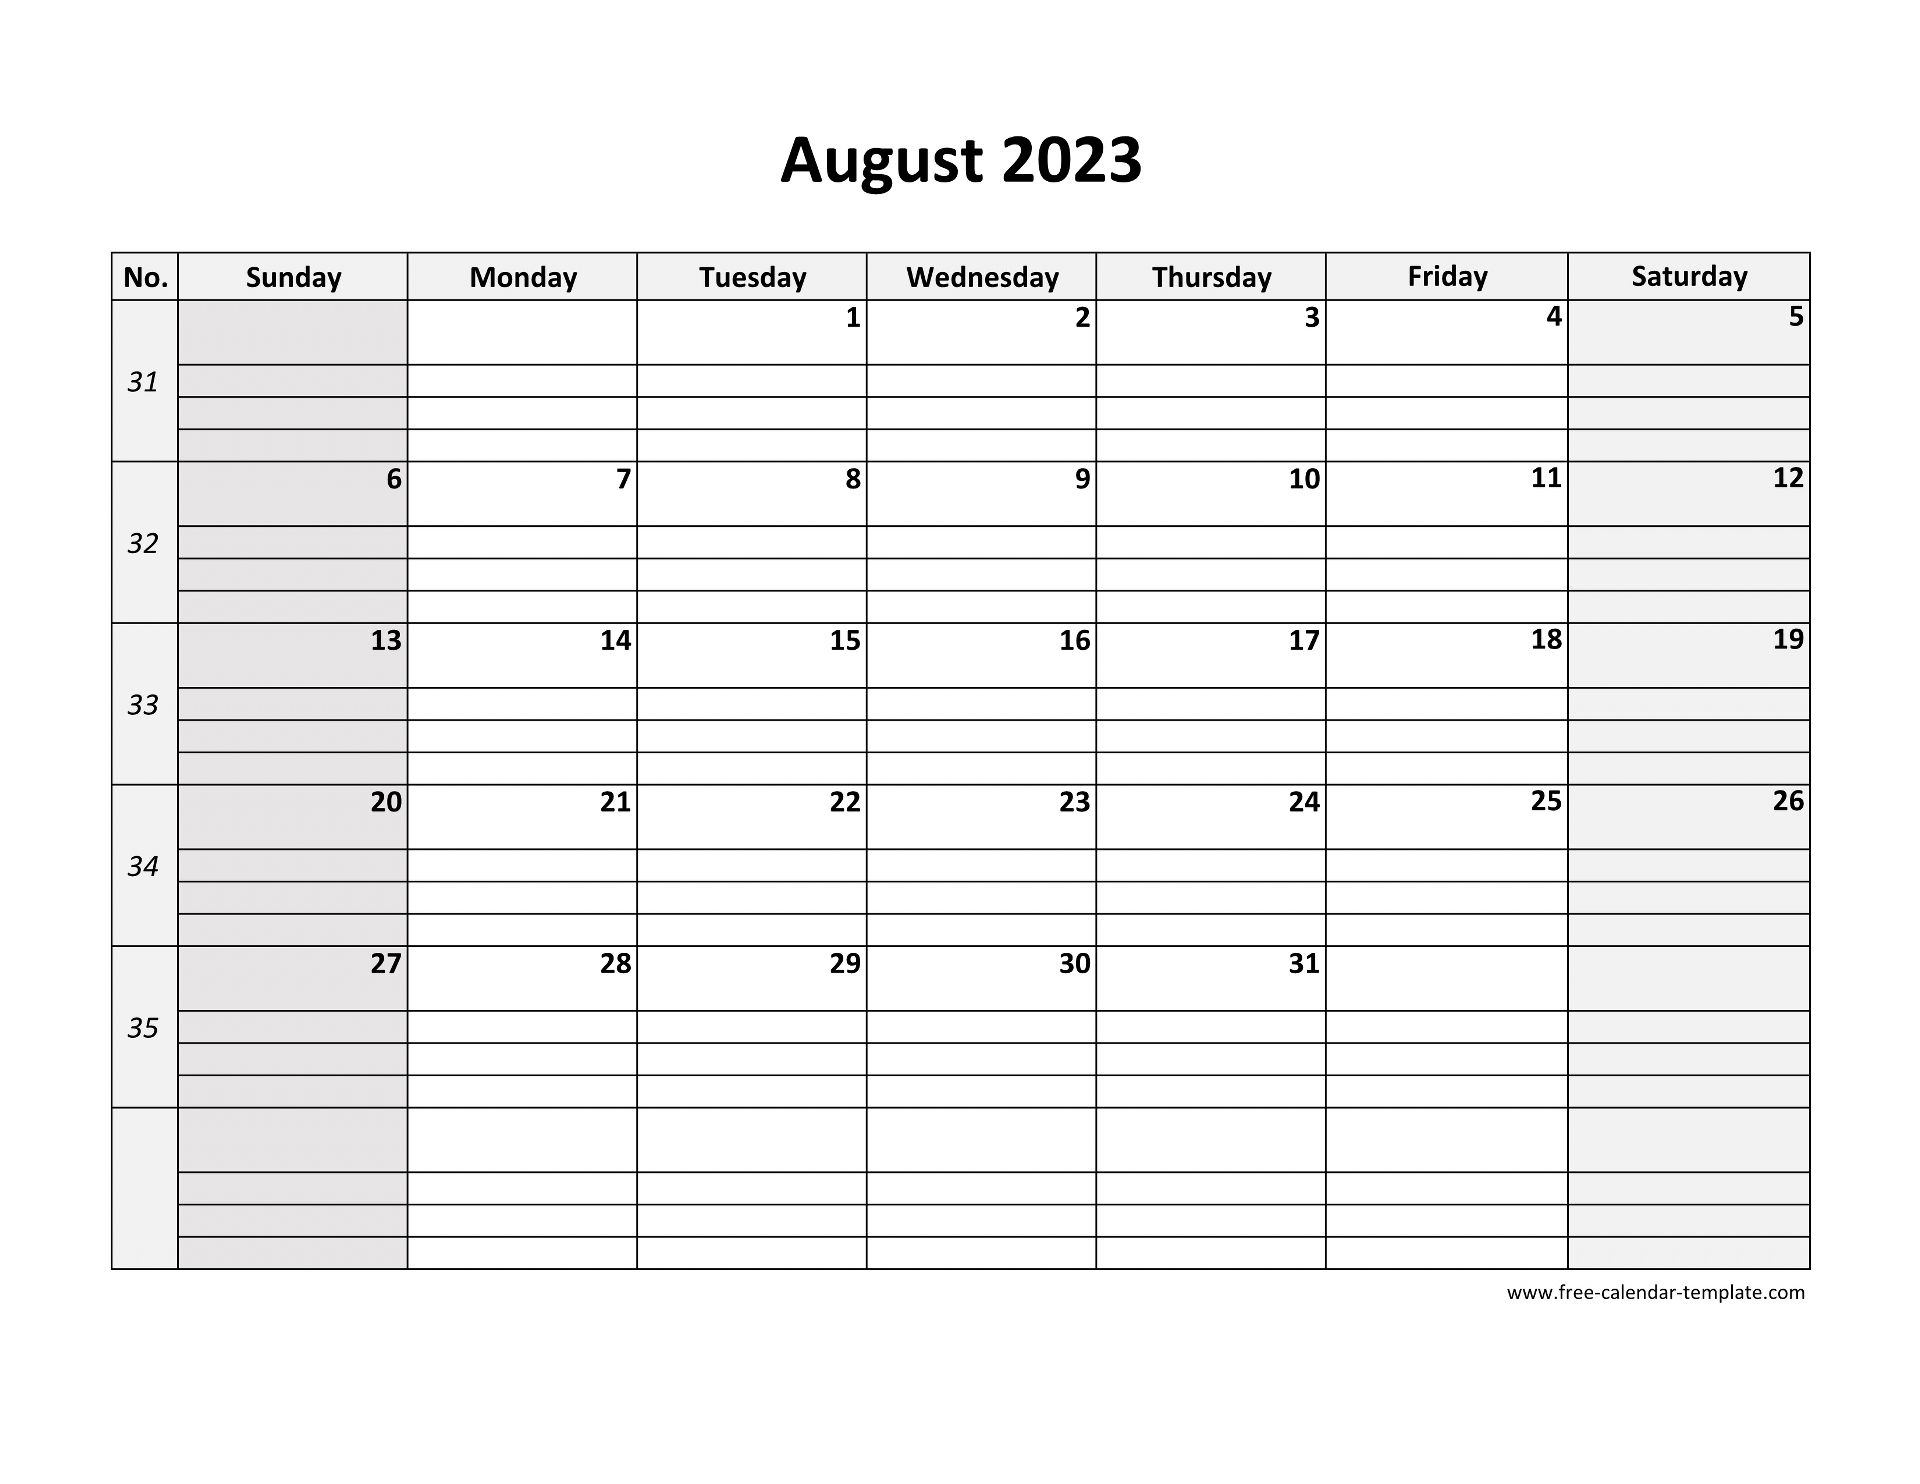 august-2023-free-calendar-tempplate-free-calendar-template